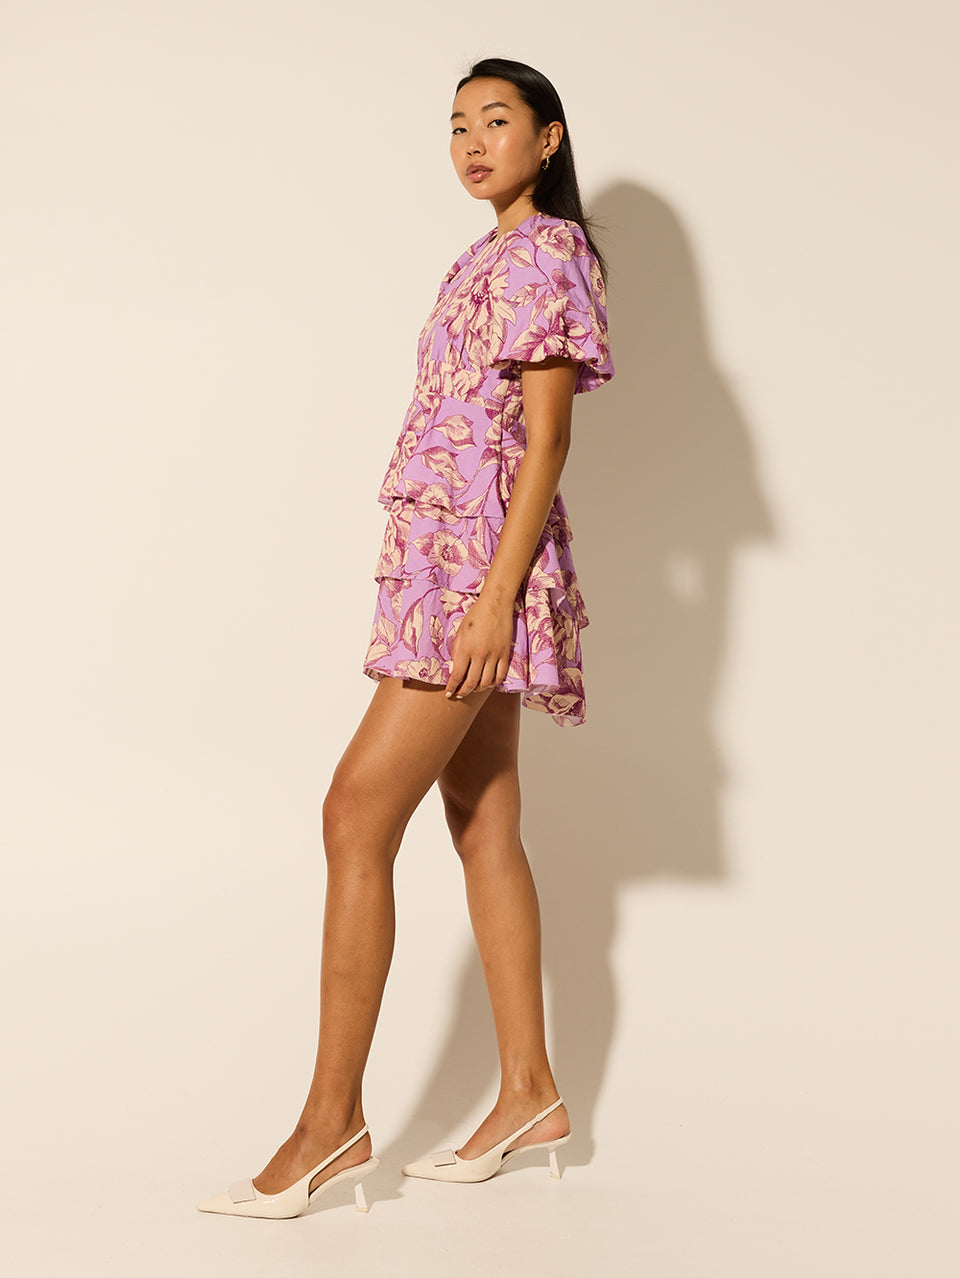 Reyna Mini Dress KIVARI | Model wears purple floral mini dress side view